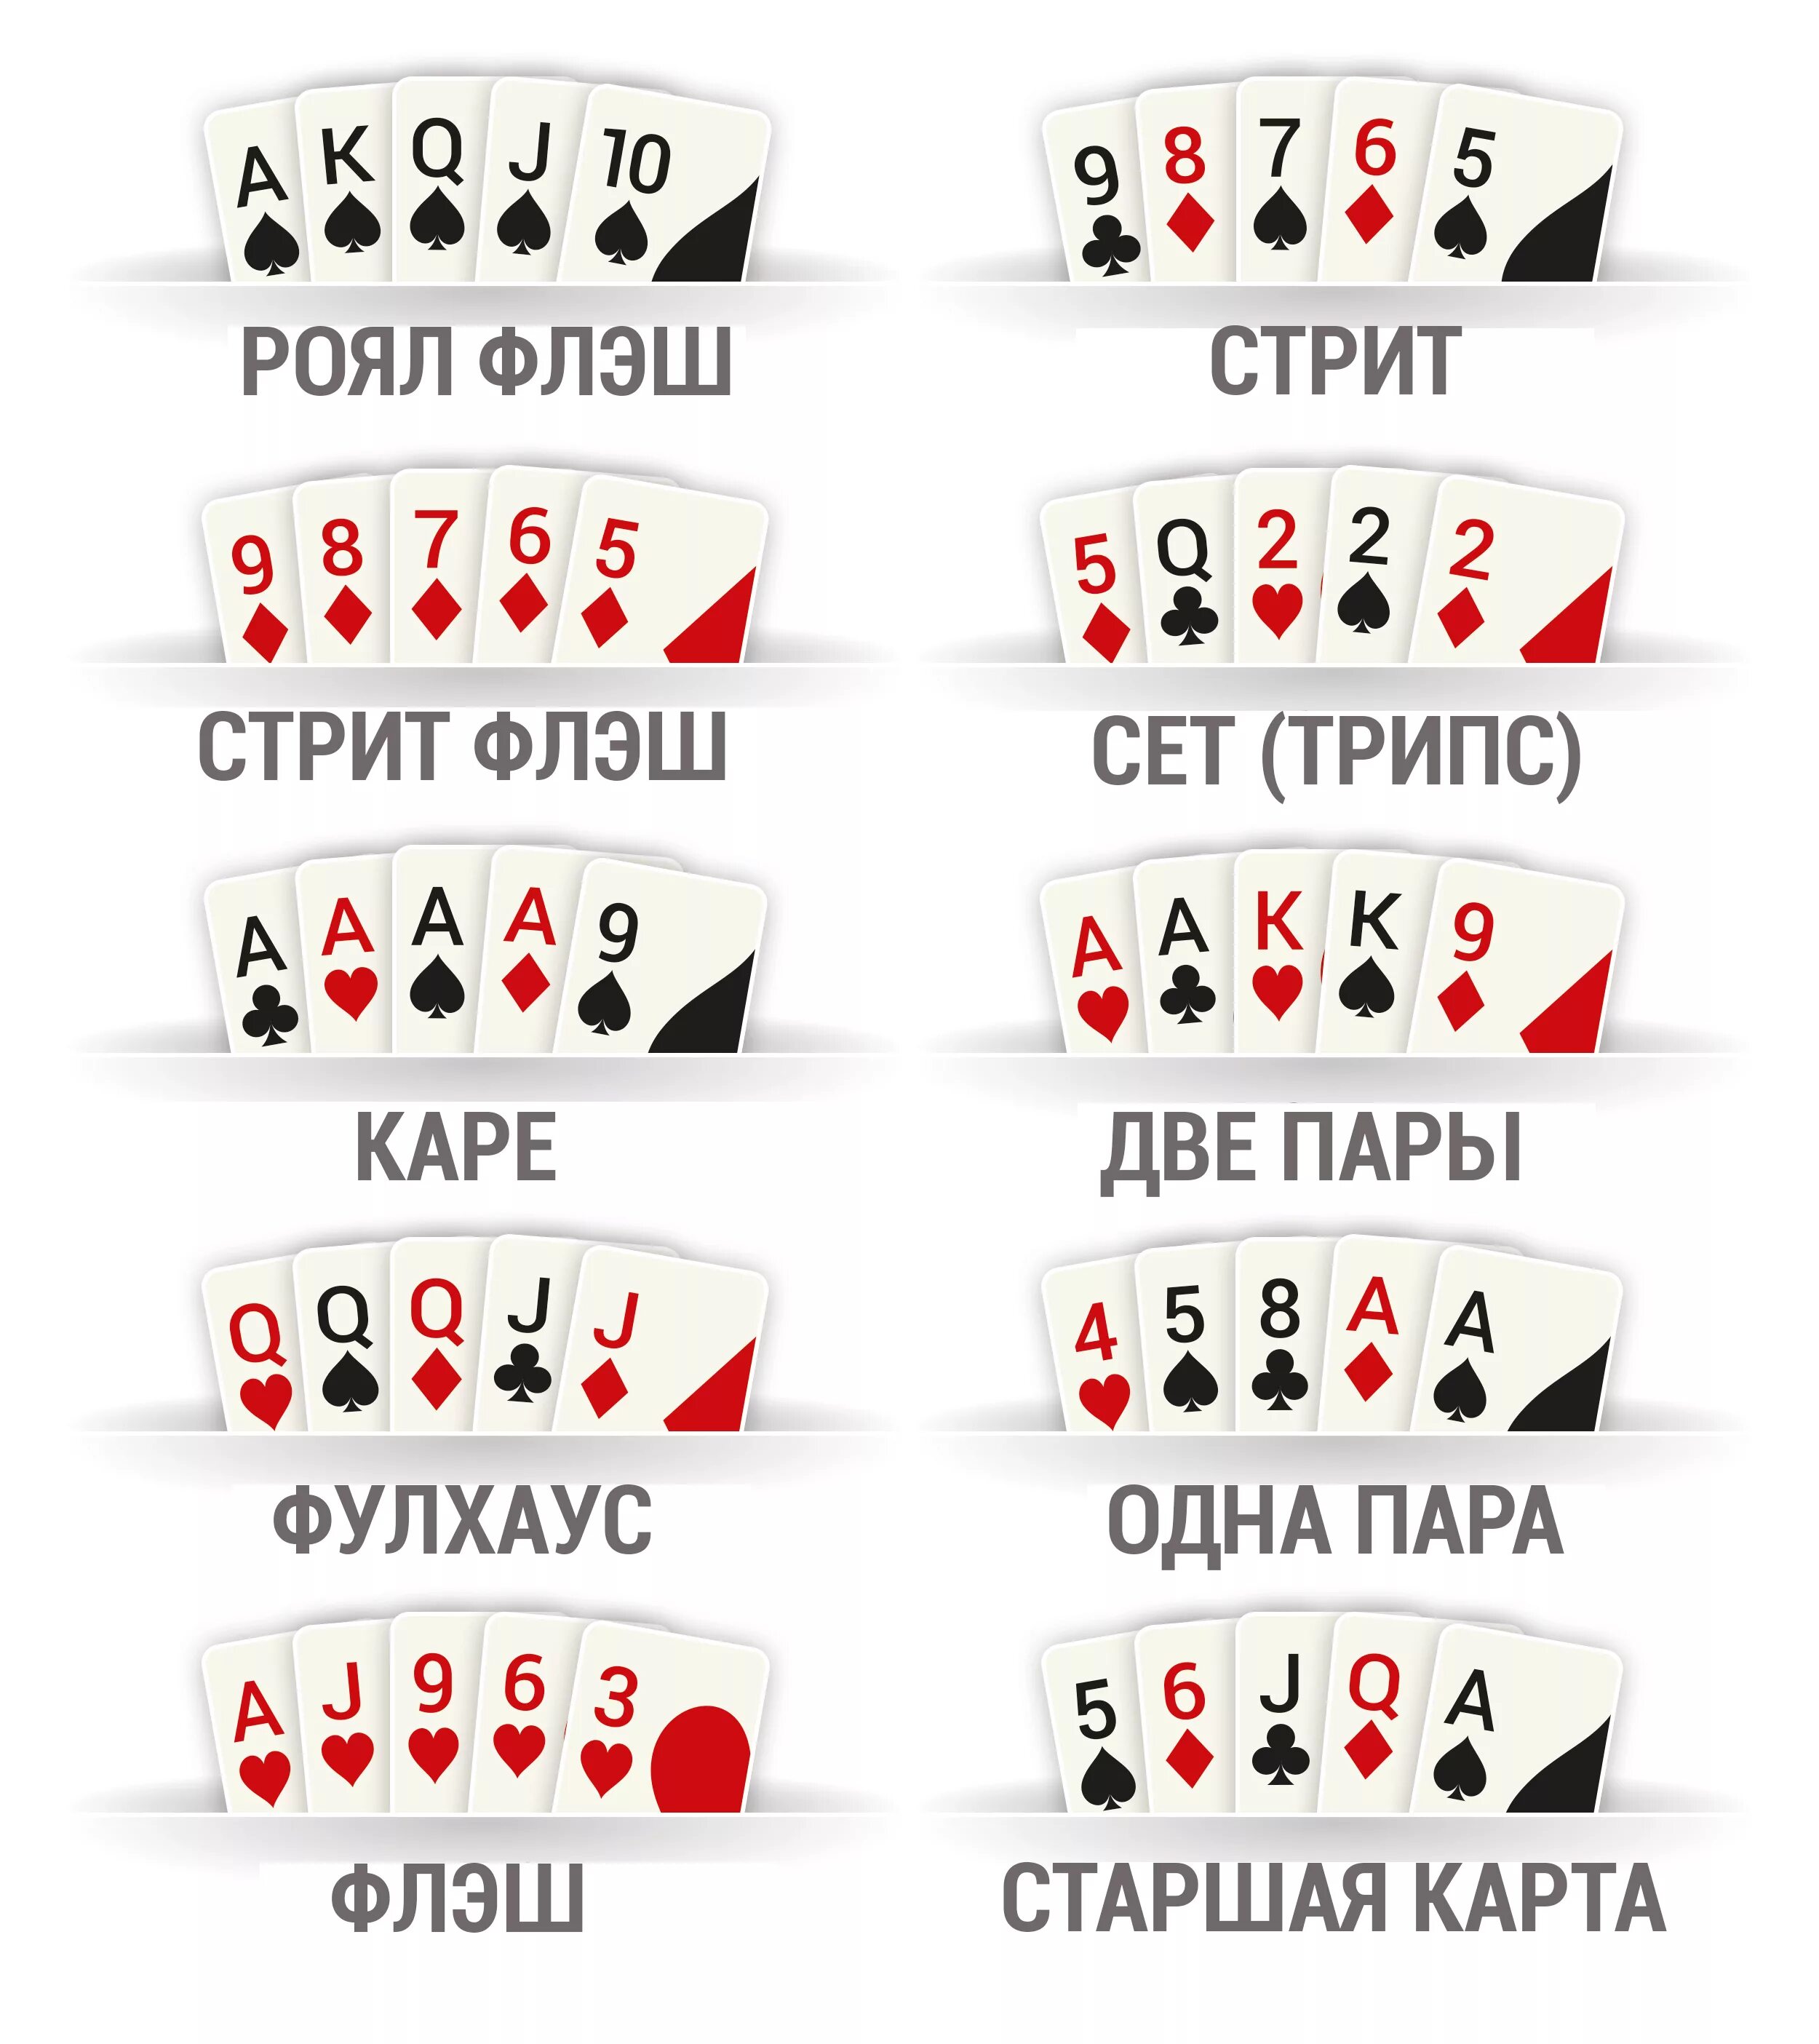 По сколько карт раздают в покере. Комбинации карт в покере по старшинству. Комбинации в покере 2 карты. Комбинации карт в покере Техасский холдем. Порядок комбинаций в покере.